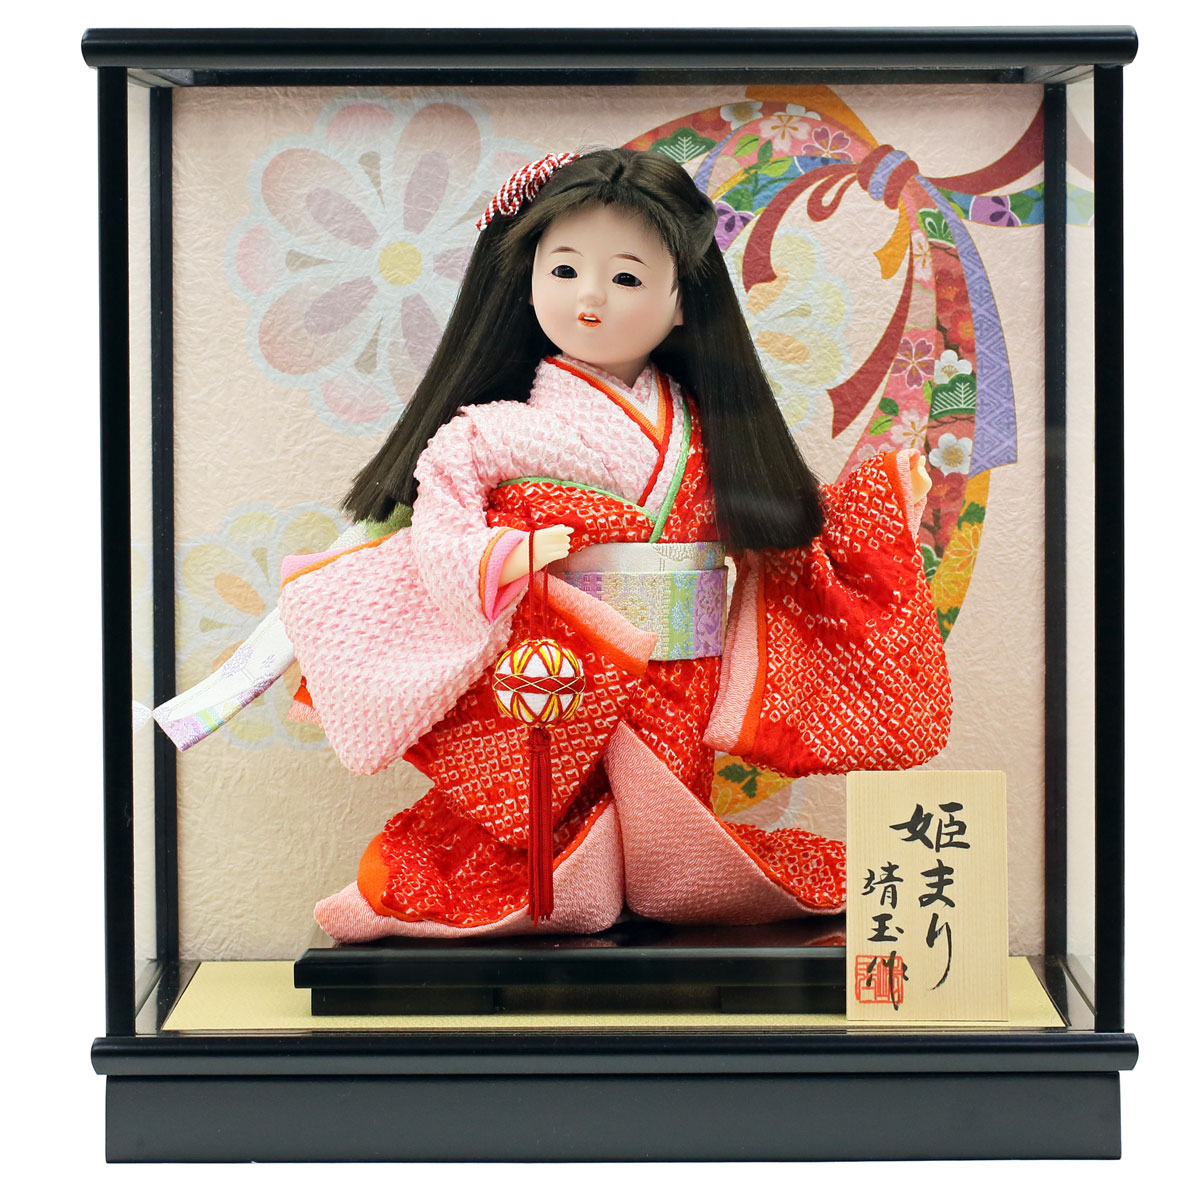 お祝い人形 ケース飾り 姫まり 日本人形 市松人形 初節句 ケース入り